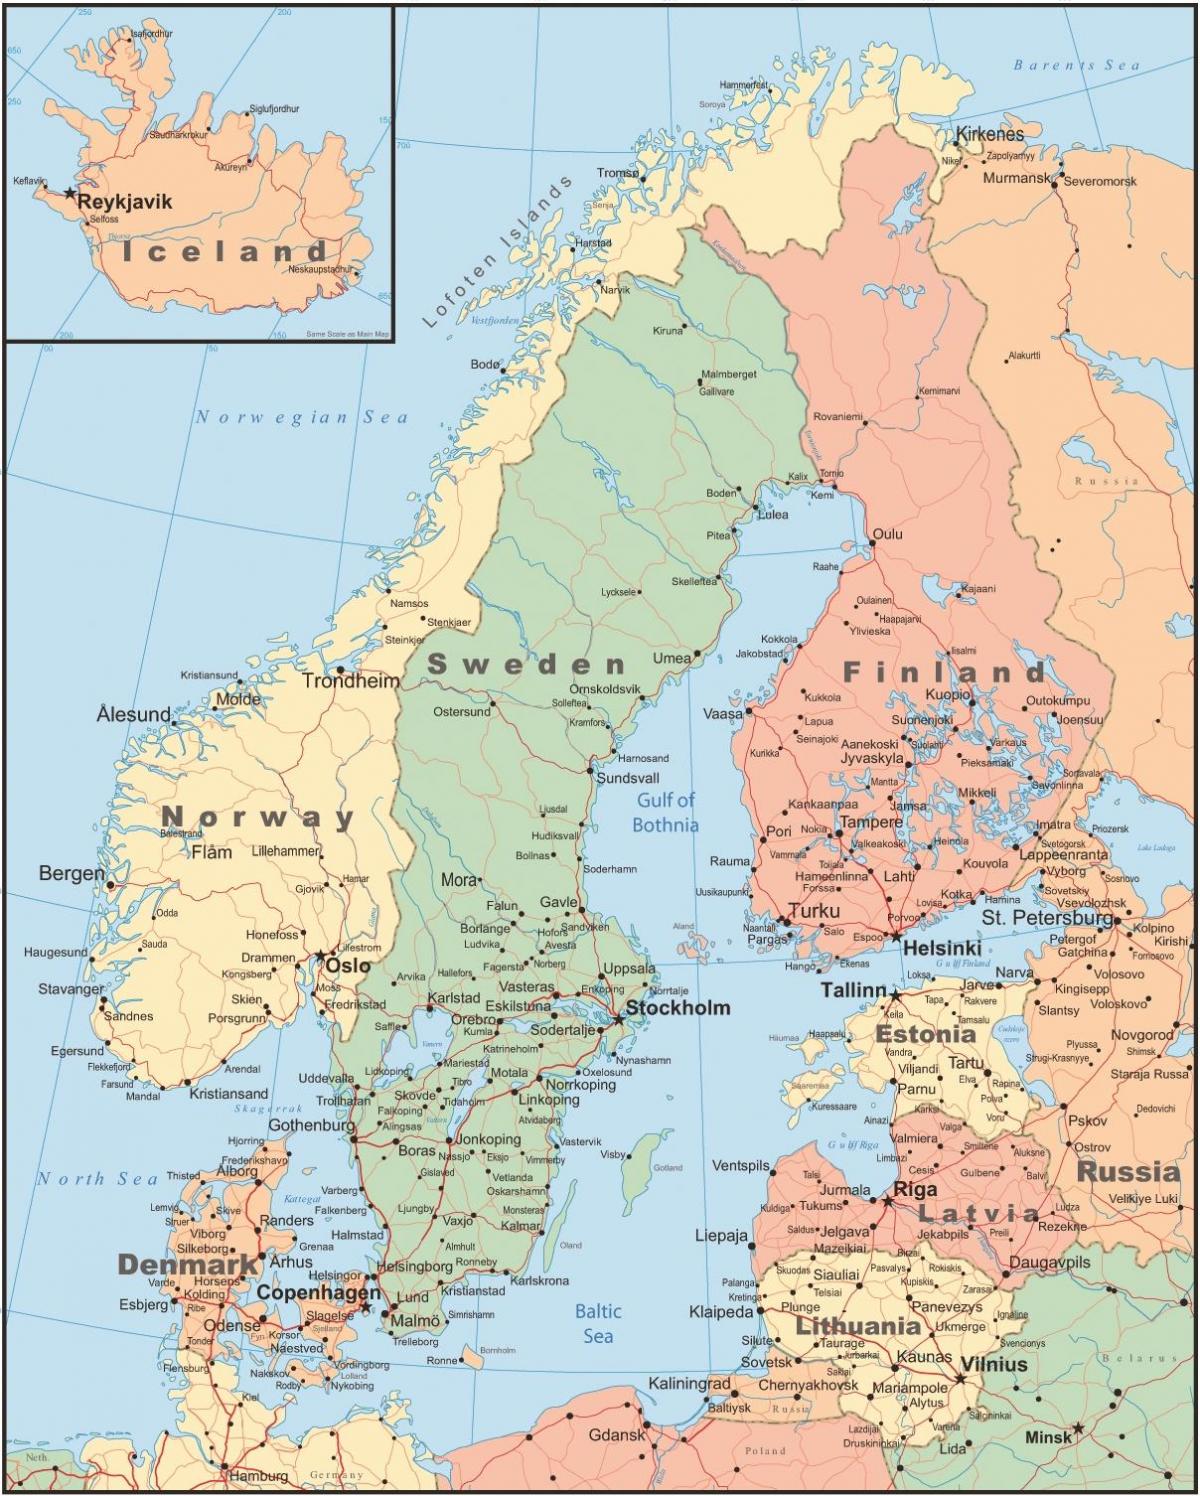 แผนที่ของฟินแลนด์และรอบๆแถวนี้แล้วประเทศ